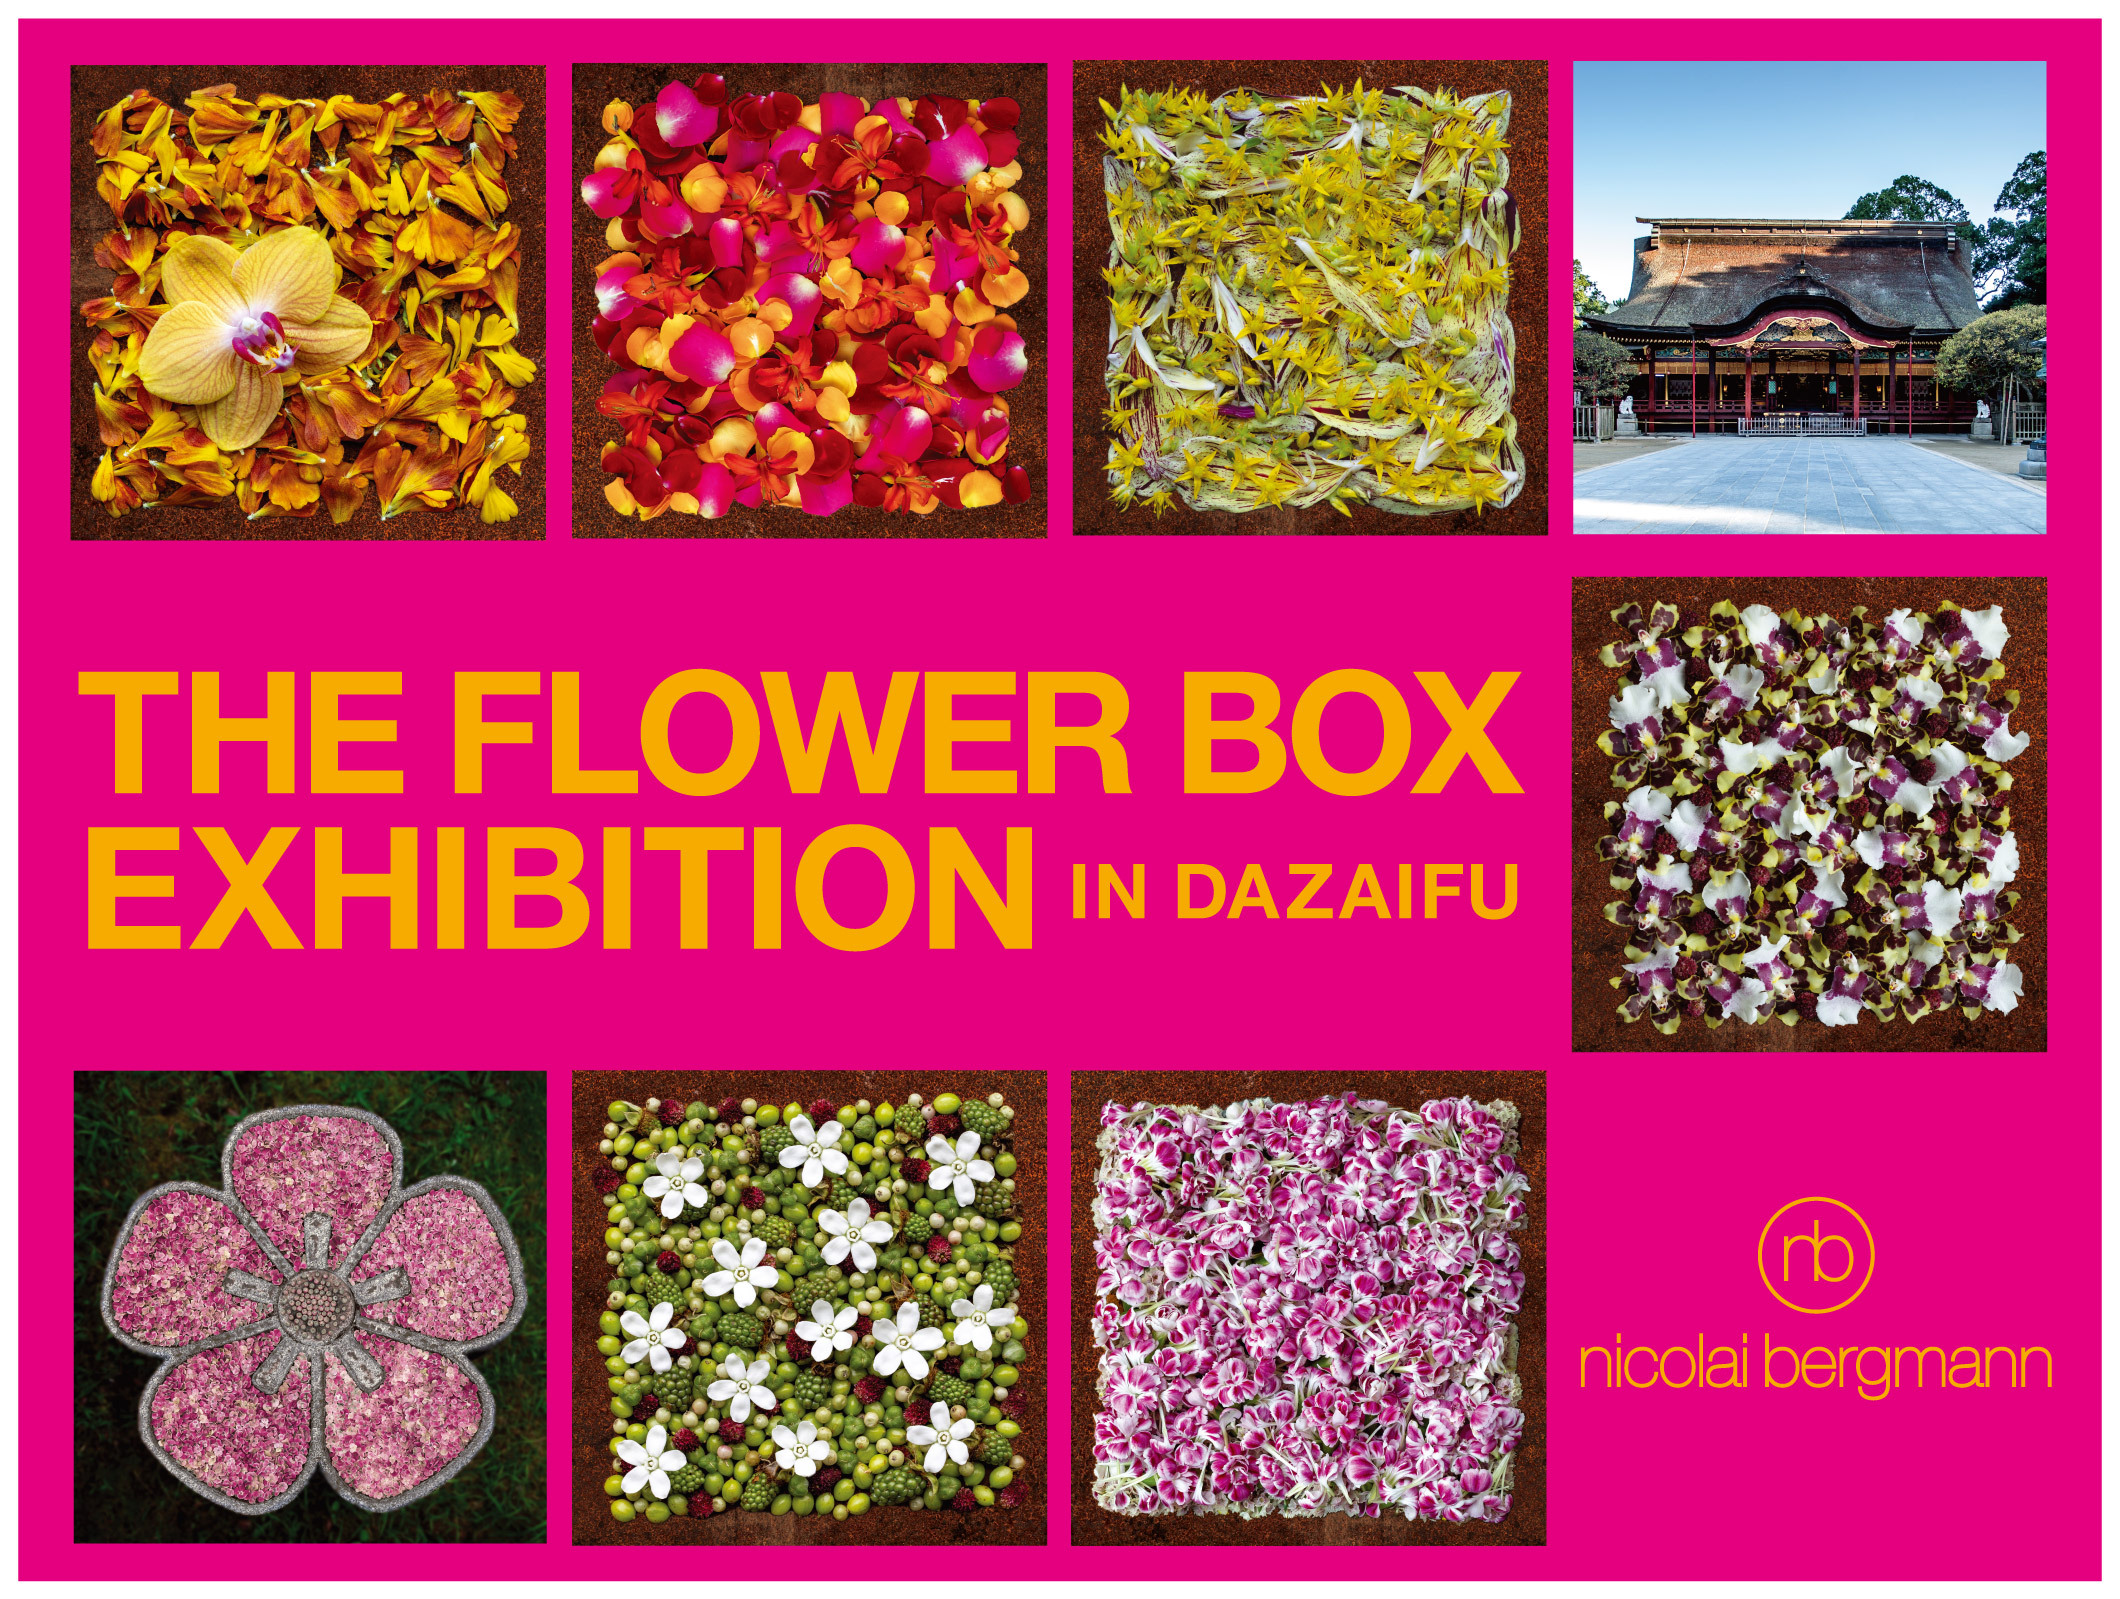 ニコライ・バーグマン「THE FLOWER BOXEXHIBITION IN DAZAIFU」を開催